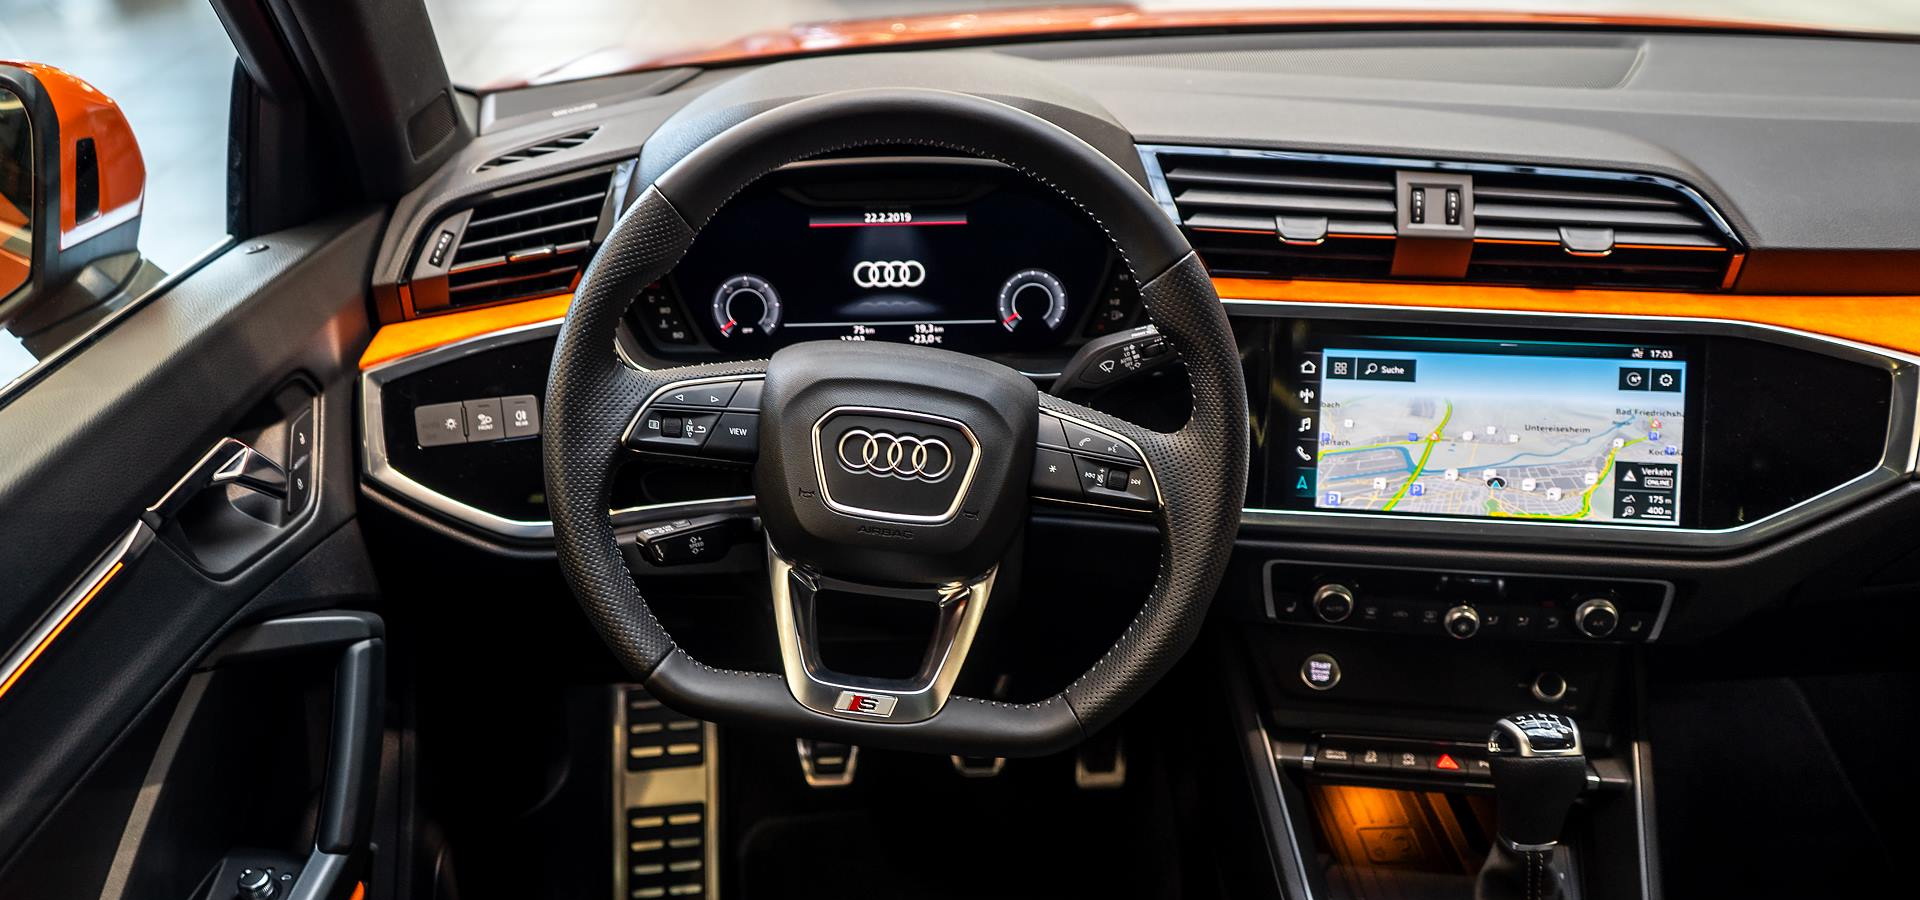 Audi Q3 S-Line Quattro Exterior Color: Black Interior Color: Nought Brown  Engine: 2000cc Turbo Horsepower: 211 Gearbox: 7 Speeds… | Instagram